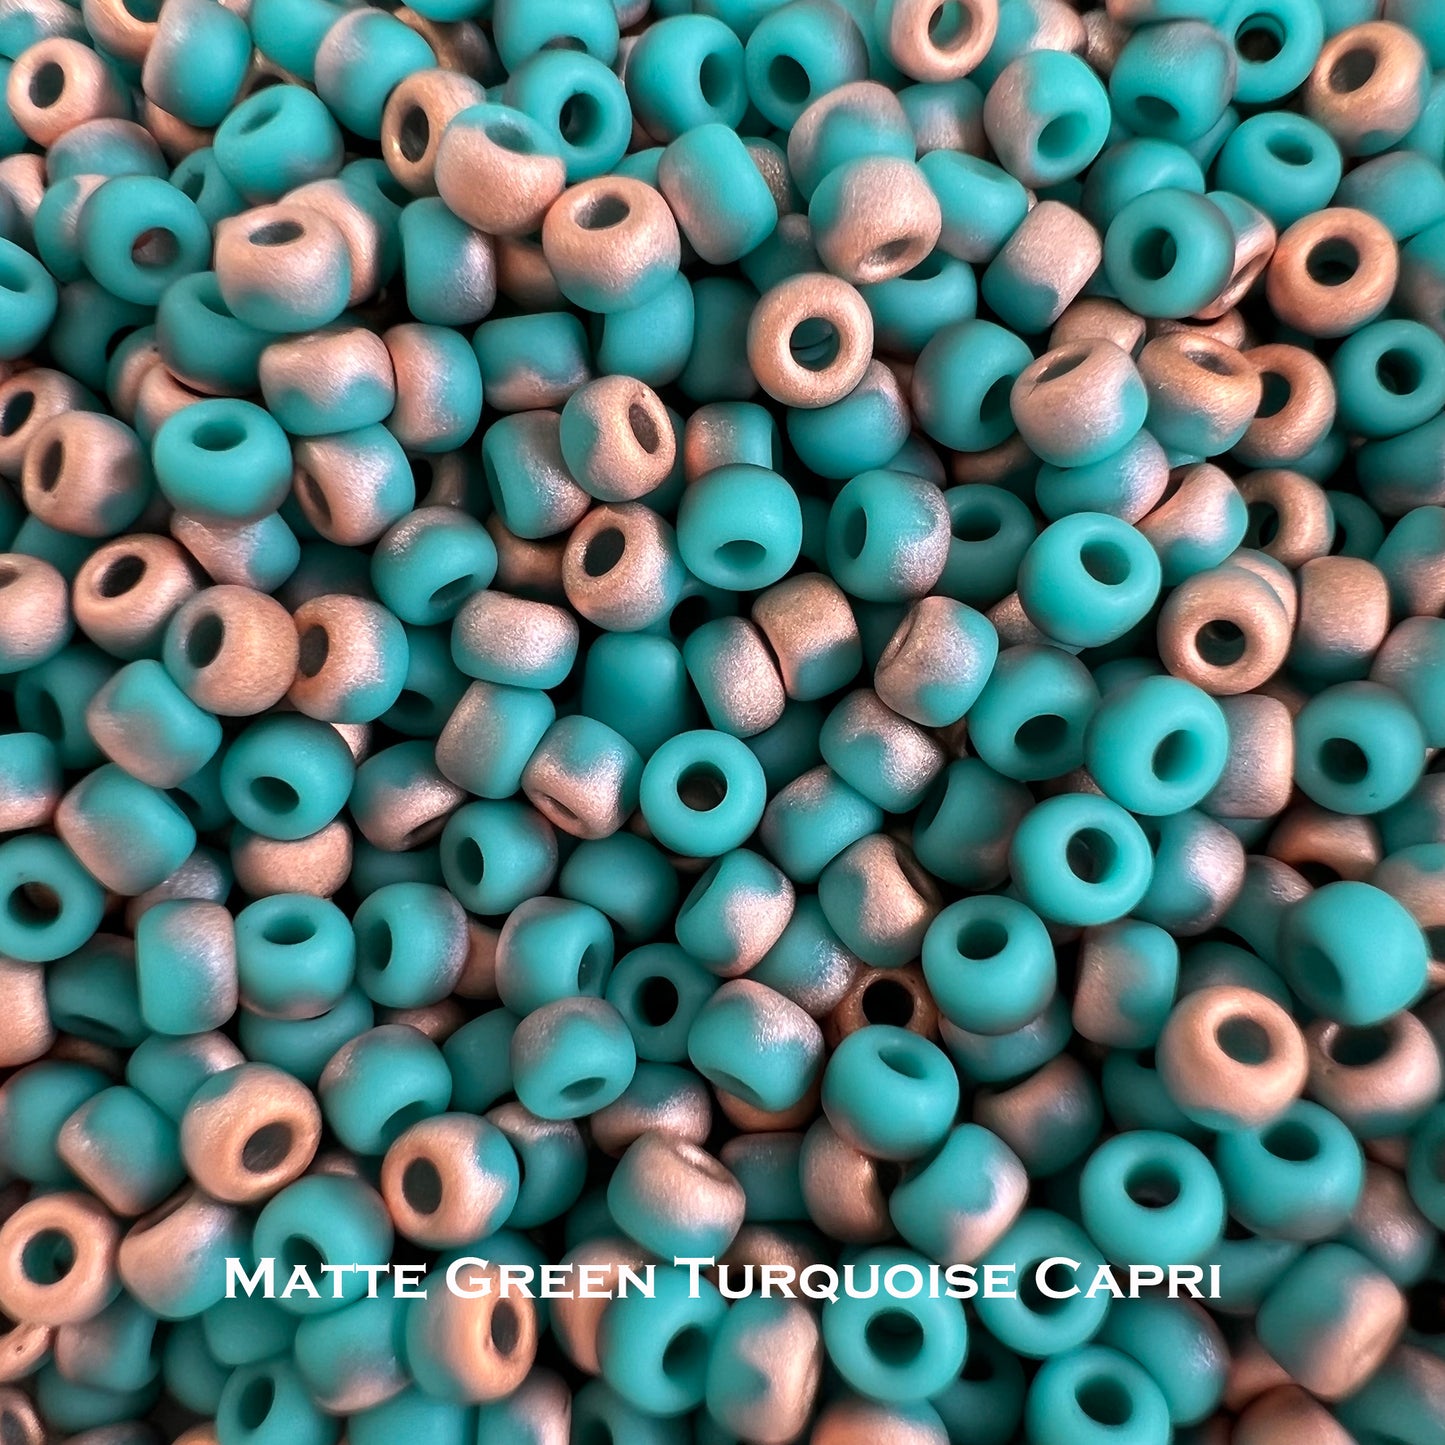 Miyuki Matte Metallic 8/0 Seed Beads - choose color